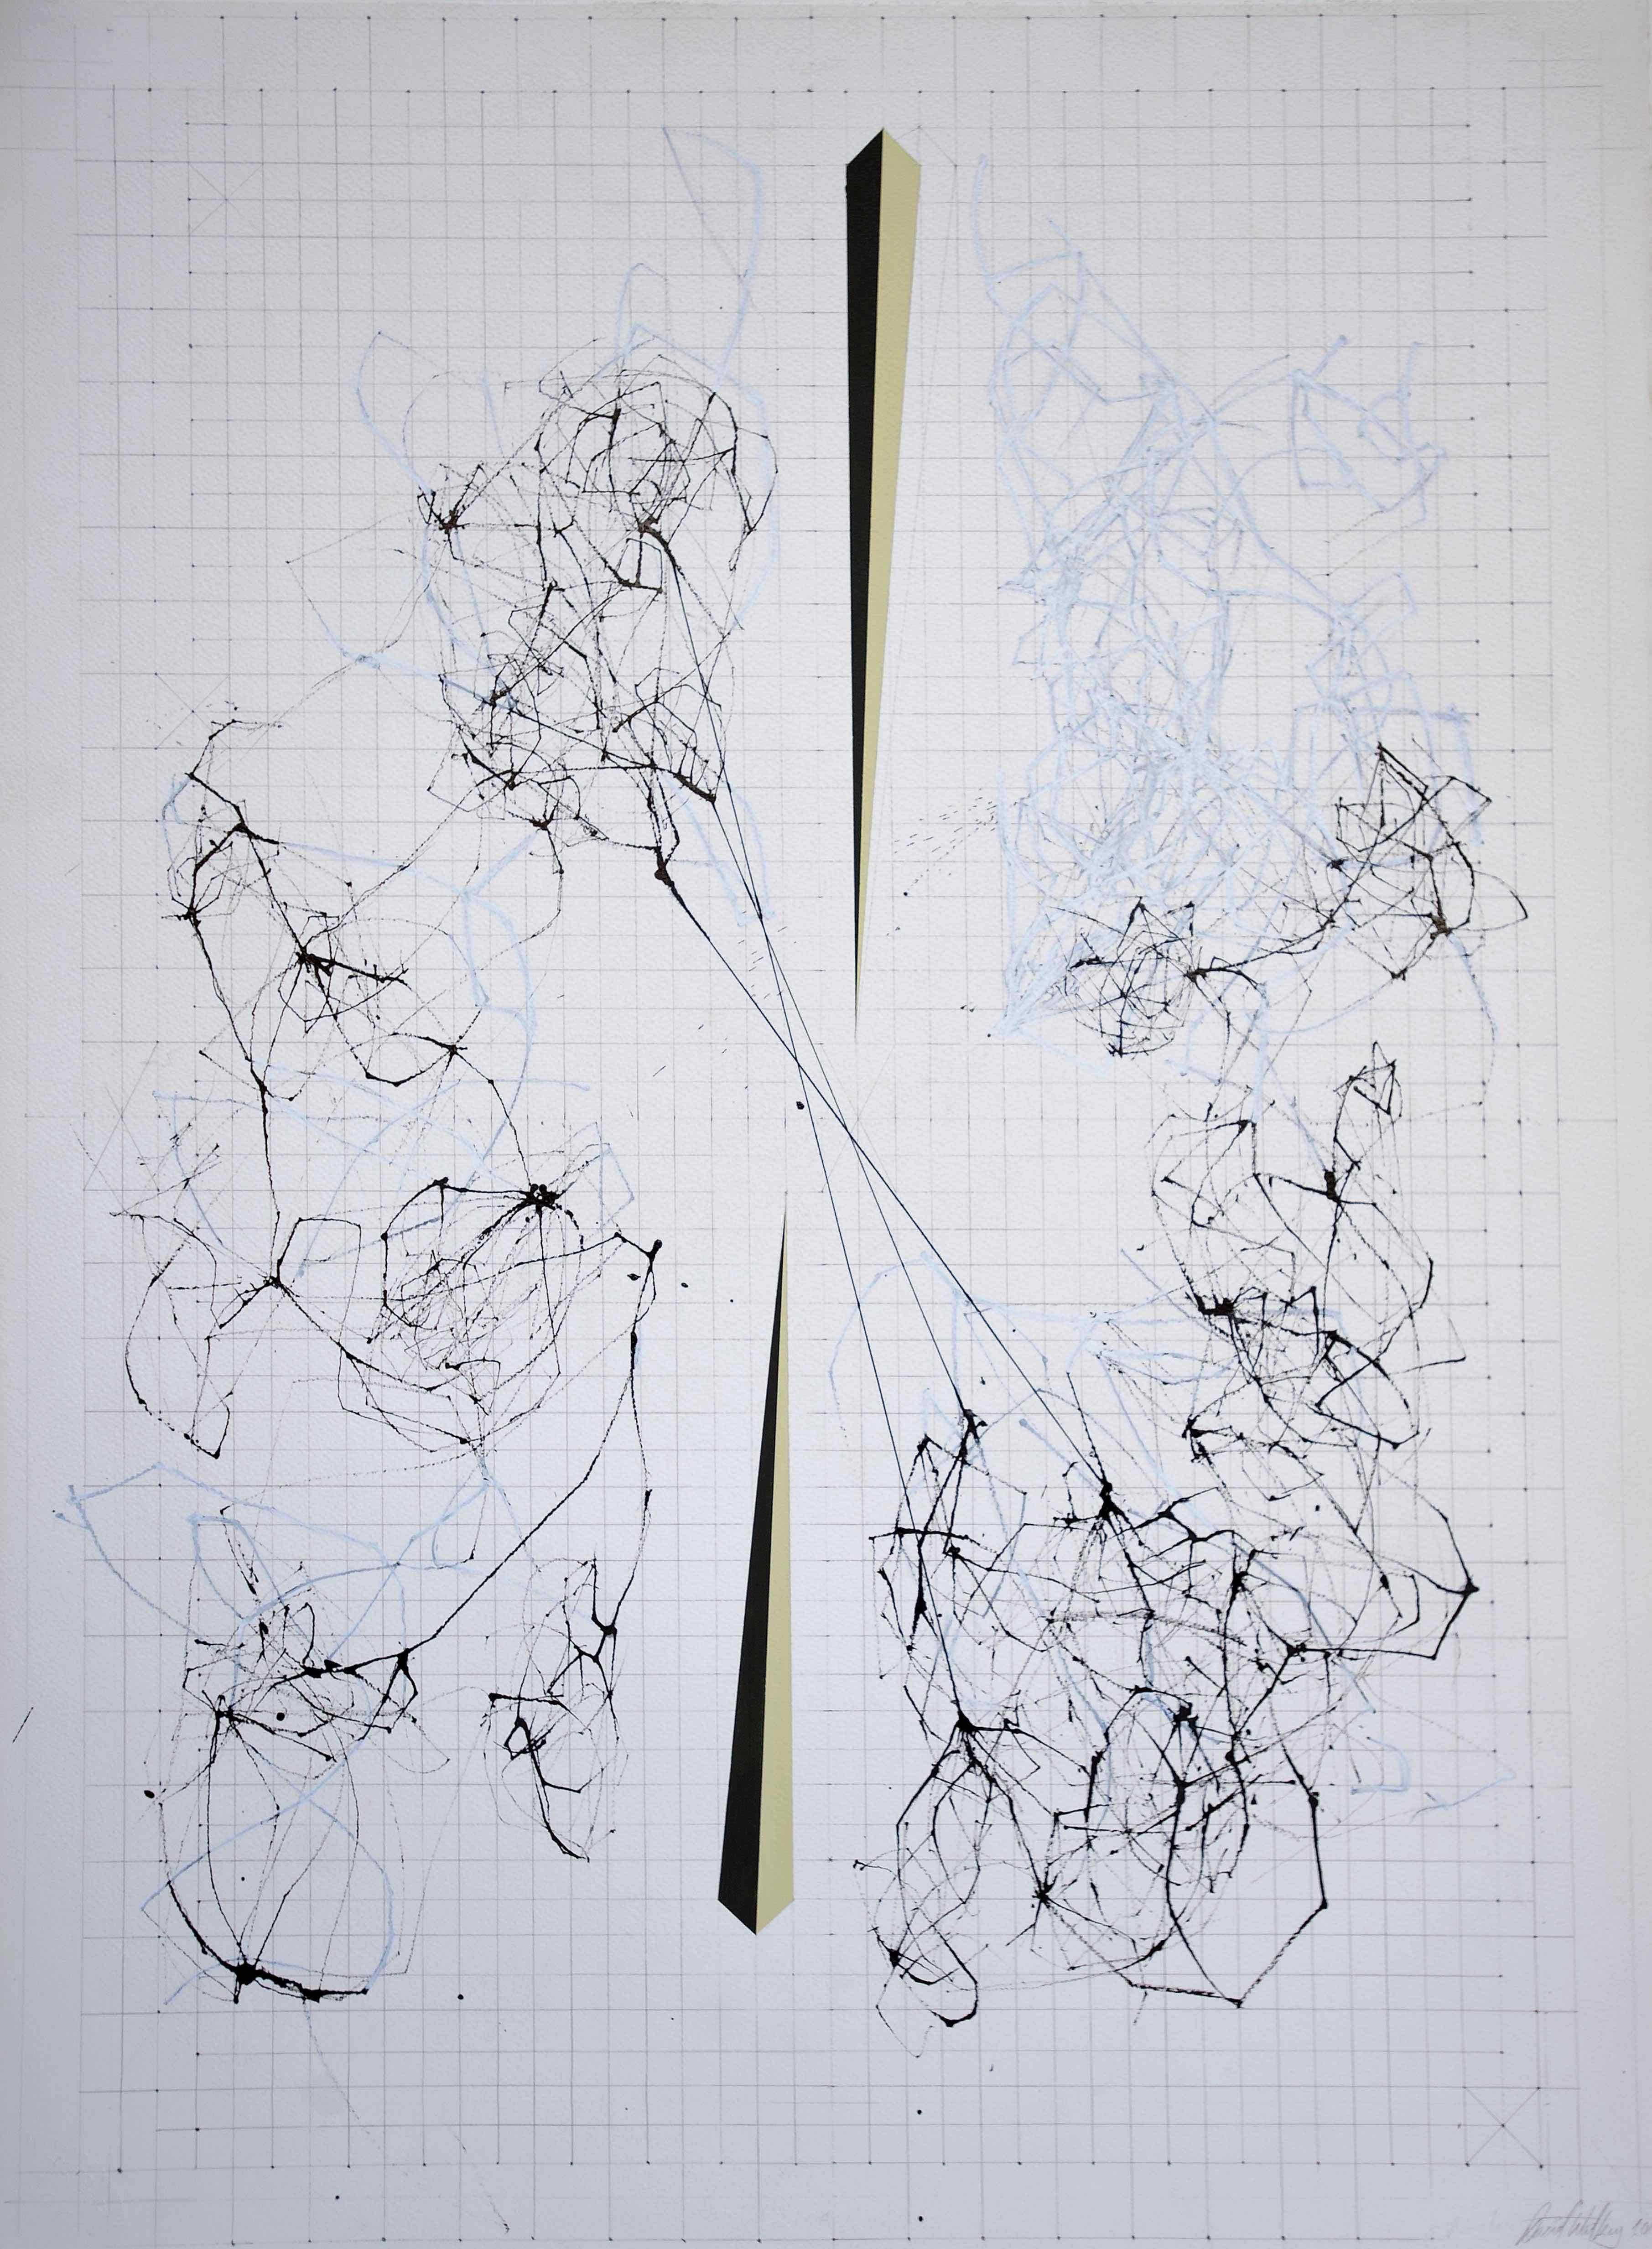 Splice von David Watkins, 2017, Tinte, Gouache und Bleistift auf Papier, 33 9/10 × 26 2/5 in; 86 × 67 cm

Die Kartierung des Internets gibt ihm eine Form, auch wenn es sich nur um ein Massennetz von Milliarden miteinander verbundener Computer